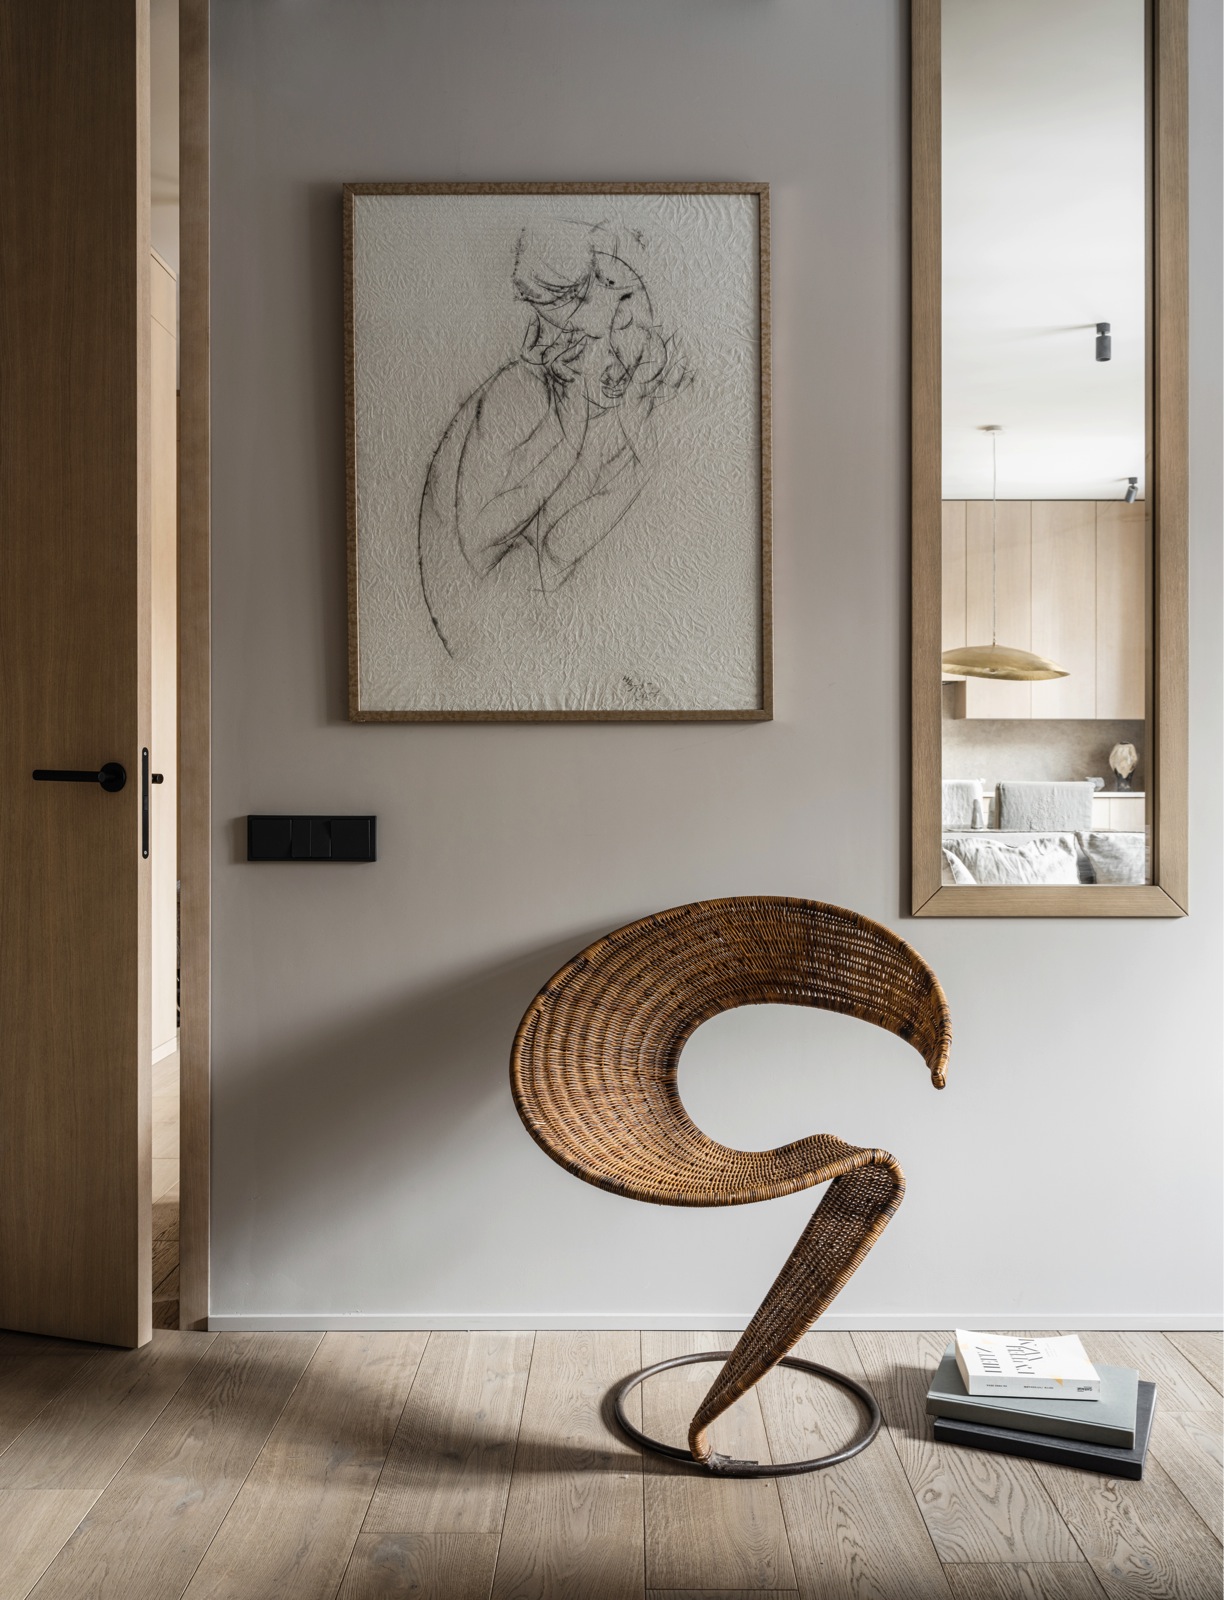 Đối diện giường ngủ, một chiếc ghế cổ điển kiểu dáng độc đáo bằng mây tre đan với chân kim loại hình tròn. Trên tường là một tác phẩm của Nalbi Bugashev, tác giả bức tranh ở hành lang lối vào. Một cửa kính viền khung gỗ hình chữ nhật dọc tường cho phép chủ nhân nhìn ra khu vực sinh hoạt chung từ trong phòng ngủ.